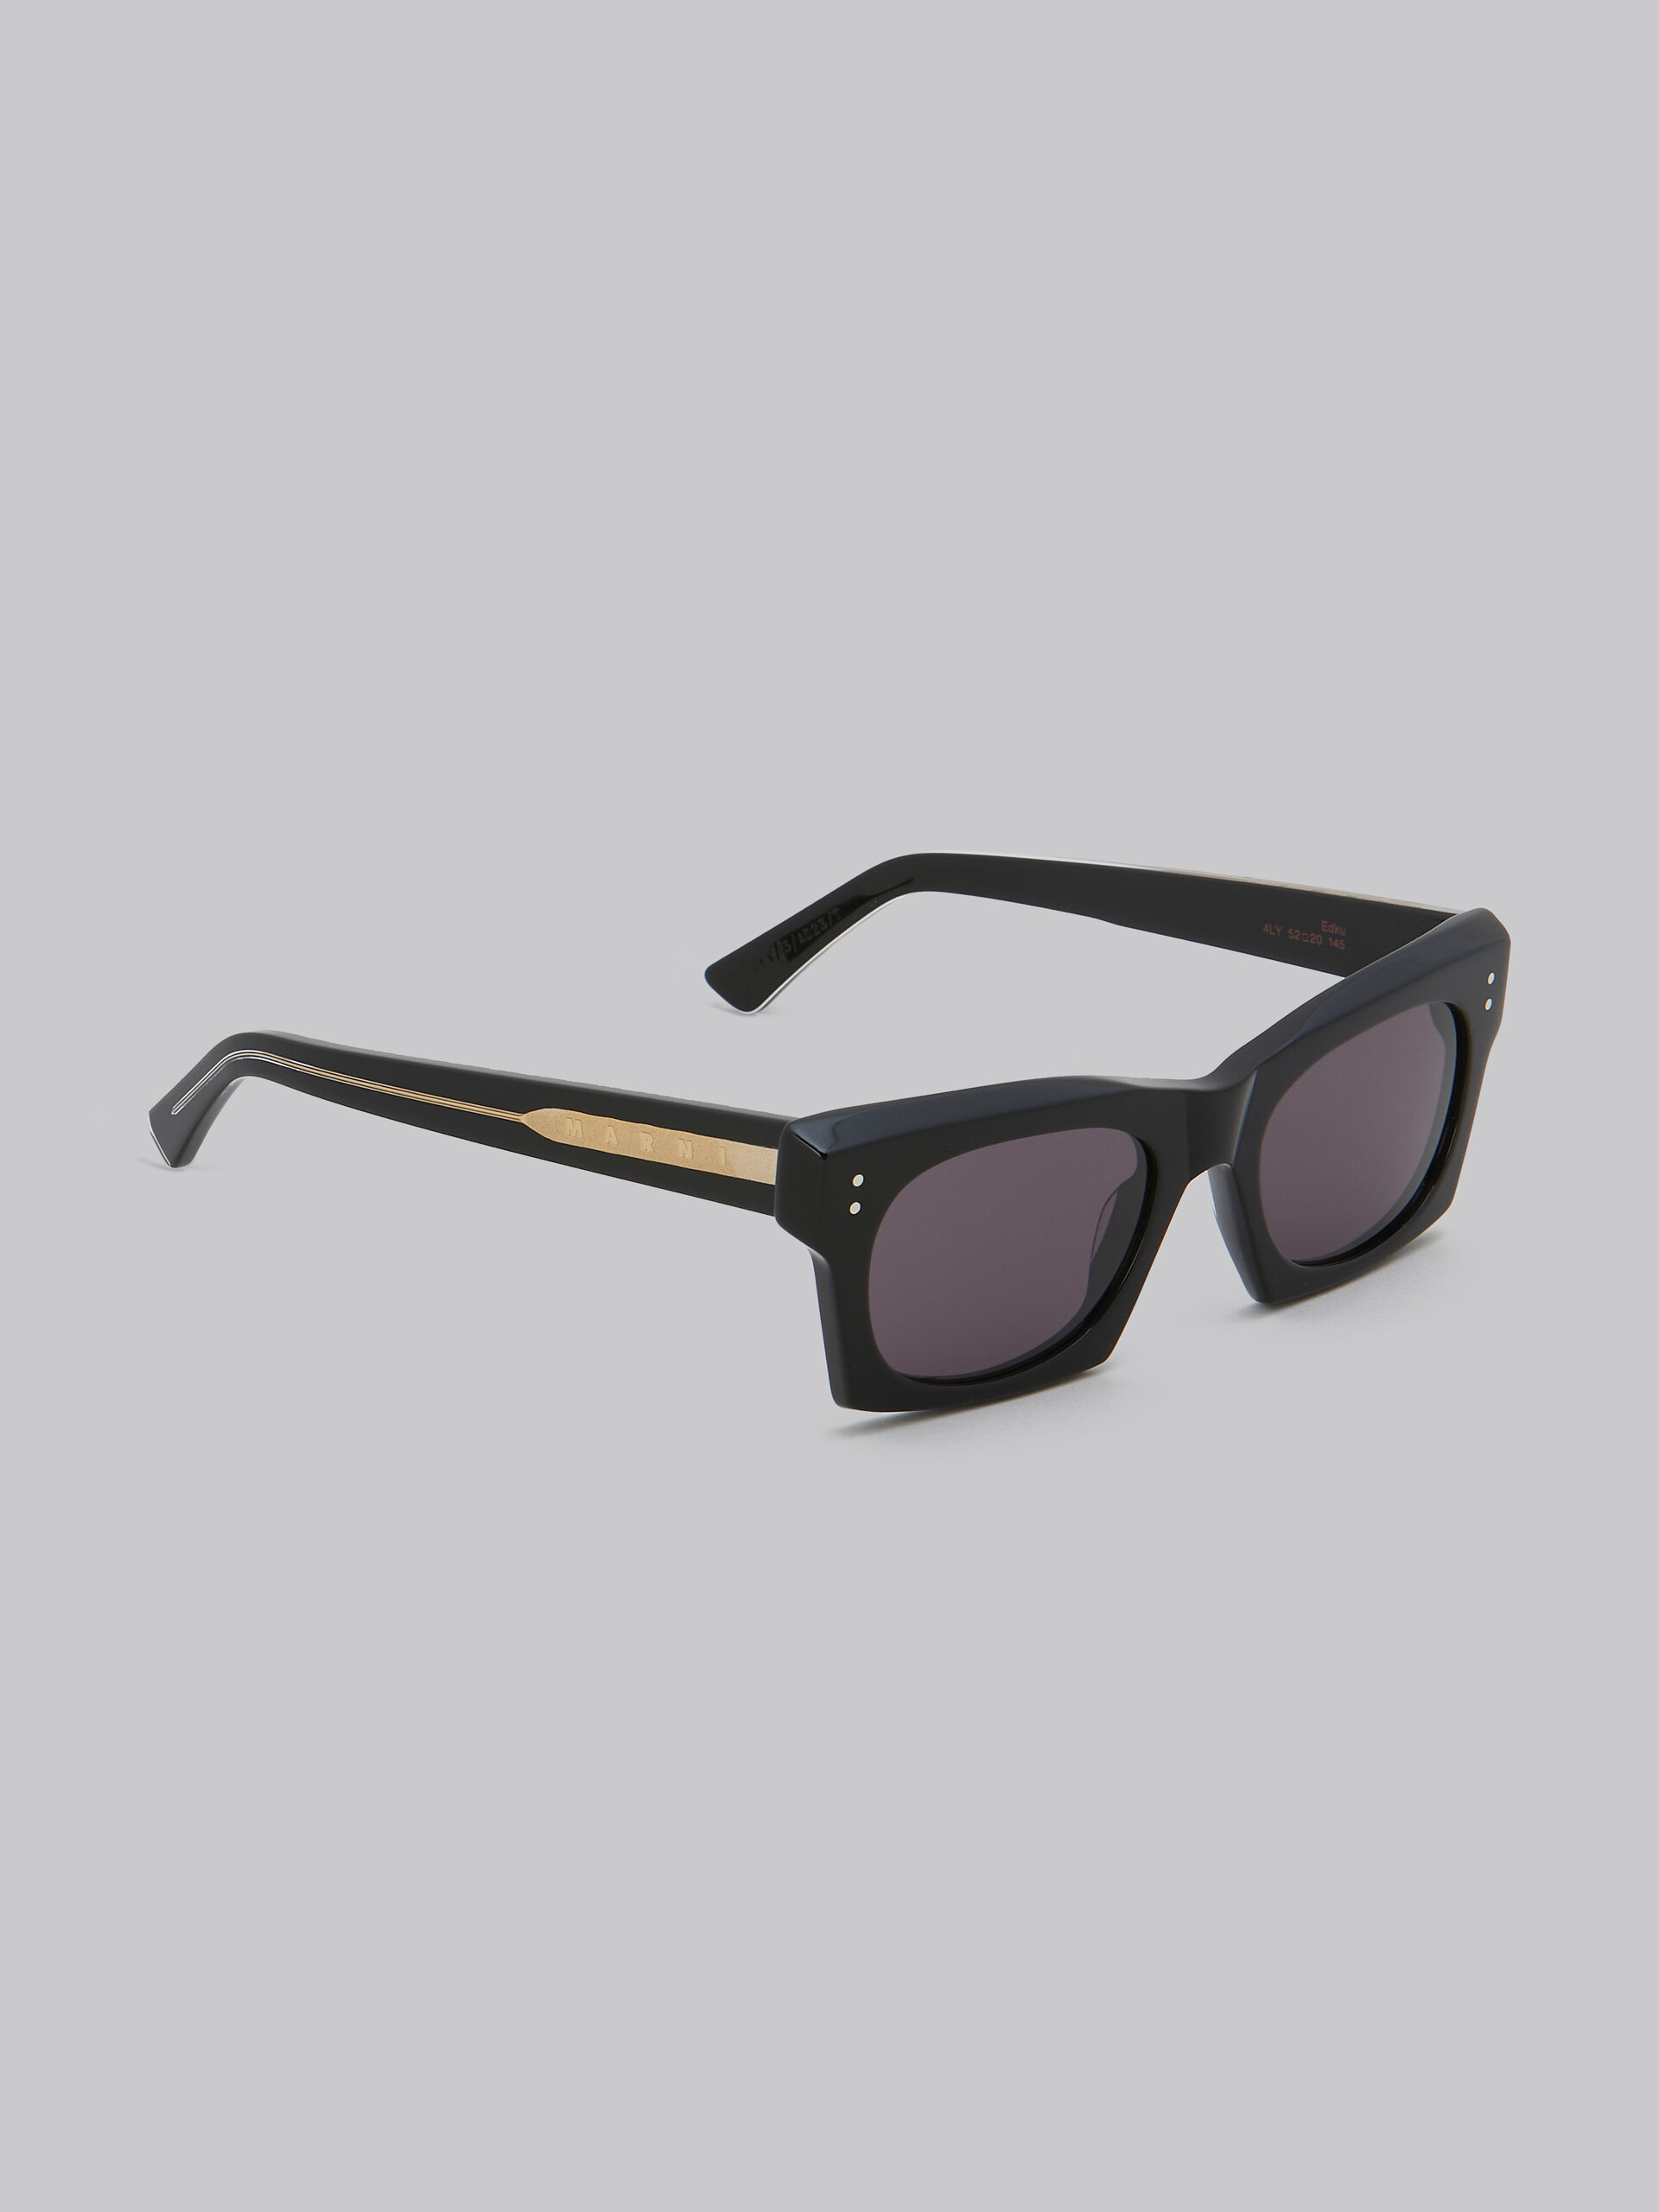 Schwarze Sonnenbrille Edku - Optisch - Image 3